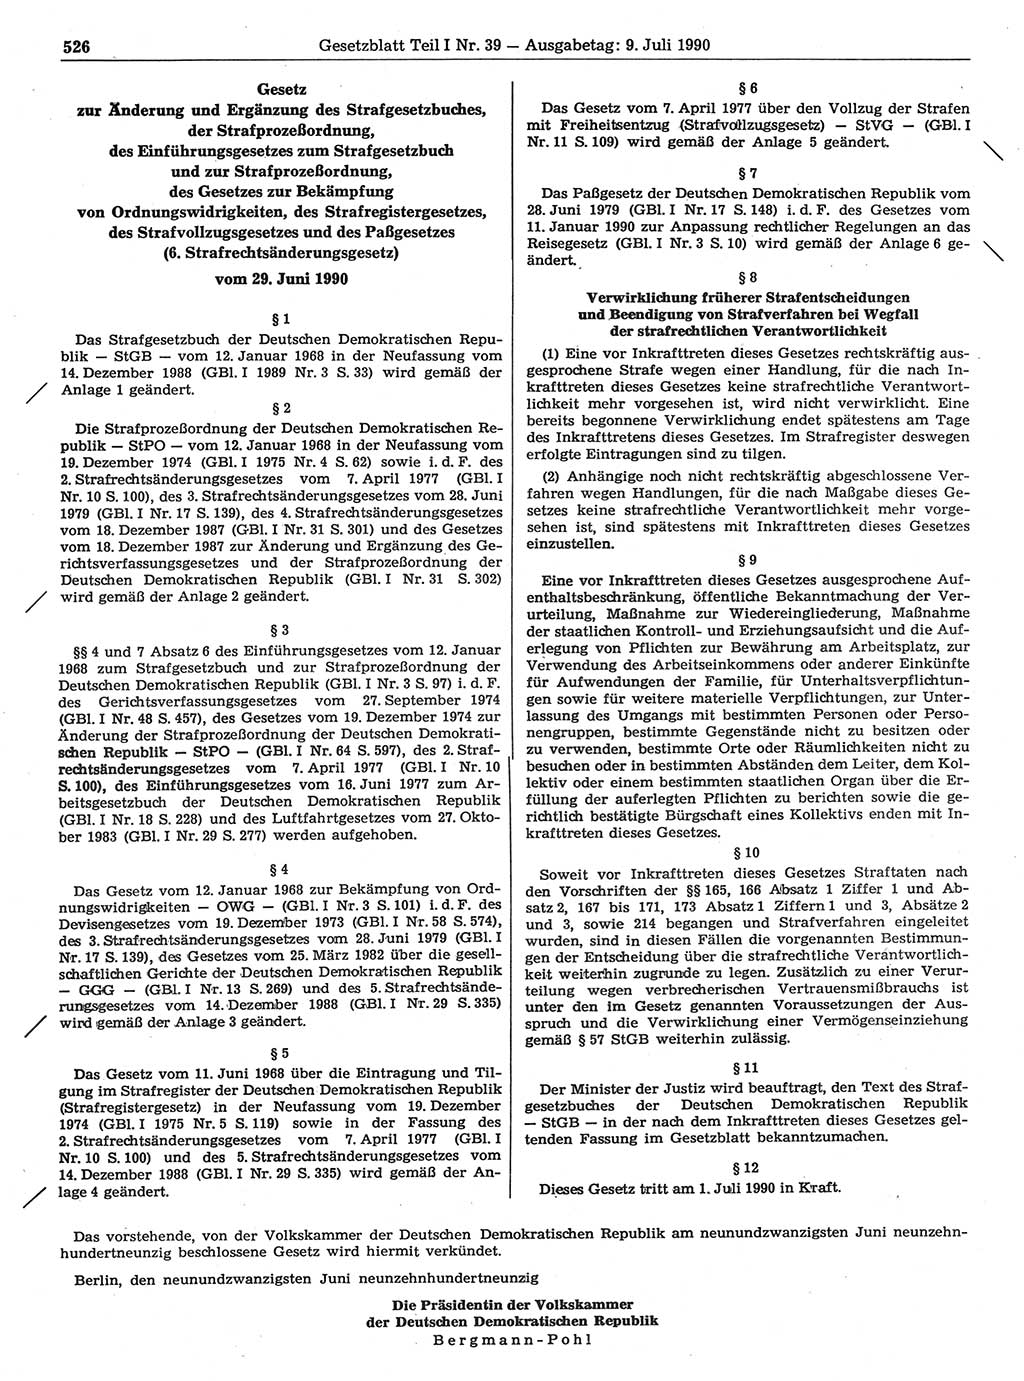 Gesetzblatt (GBl.) der Deutschen Demokratischen Republik (DDR) Teil Ⅰ 1990, Seite 526 (GBl. DDR Ⅰ 1990, S. 526)